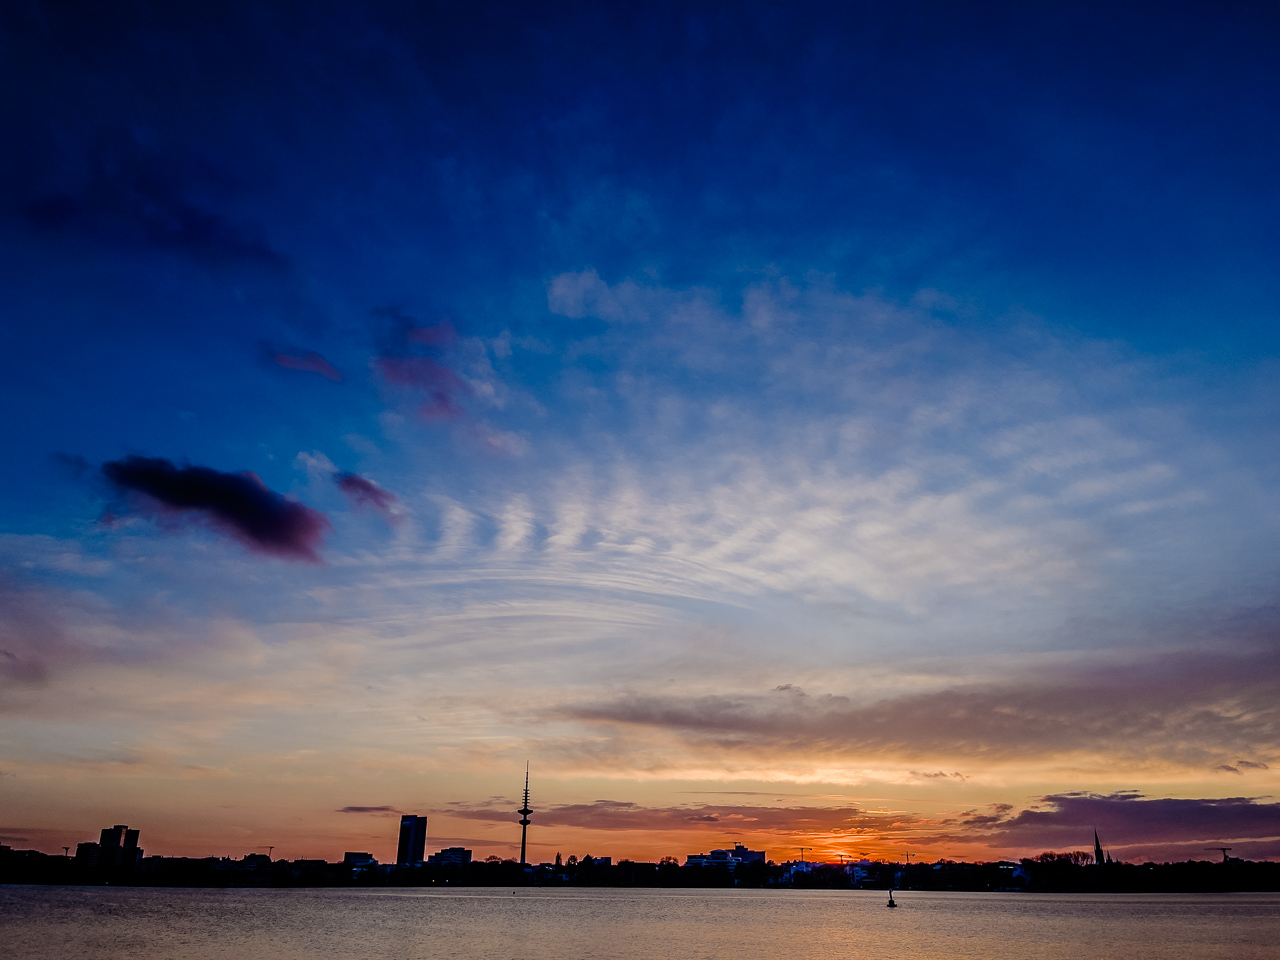 Städtischer See, SonnenUntergang. Silhoeutte von FernsehTurm und HochHaus, darüber vor dunkelBlauem Himmel ein gekrümmtes WolkenBand